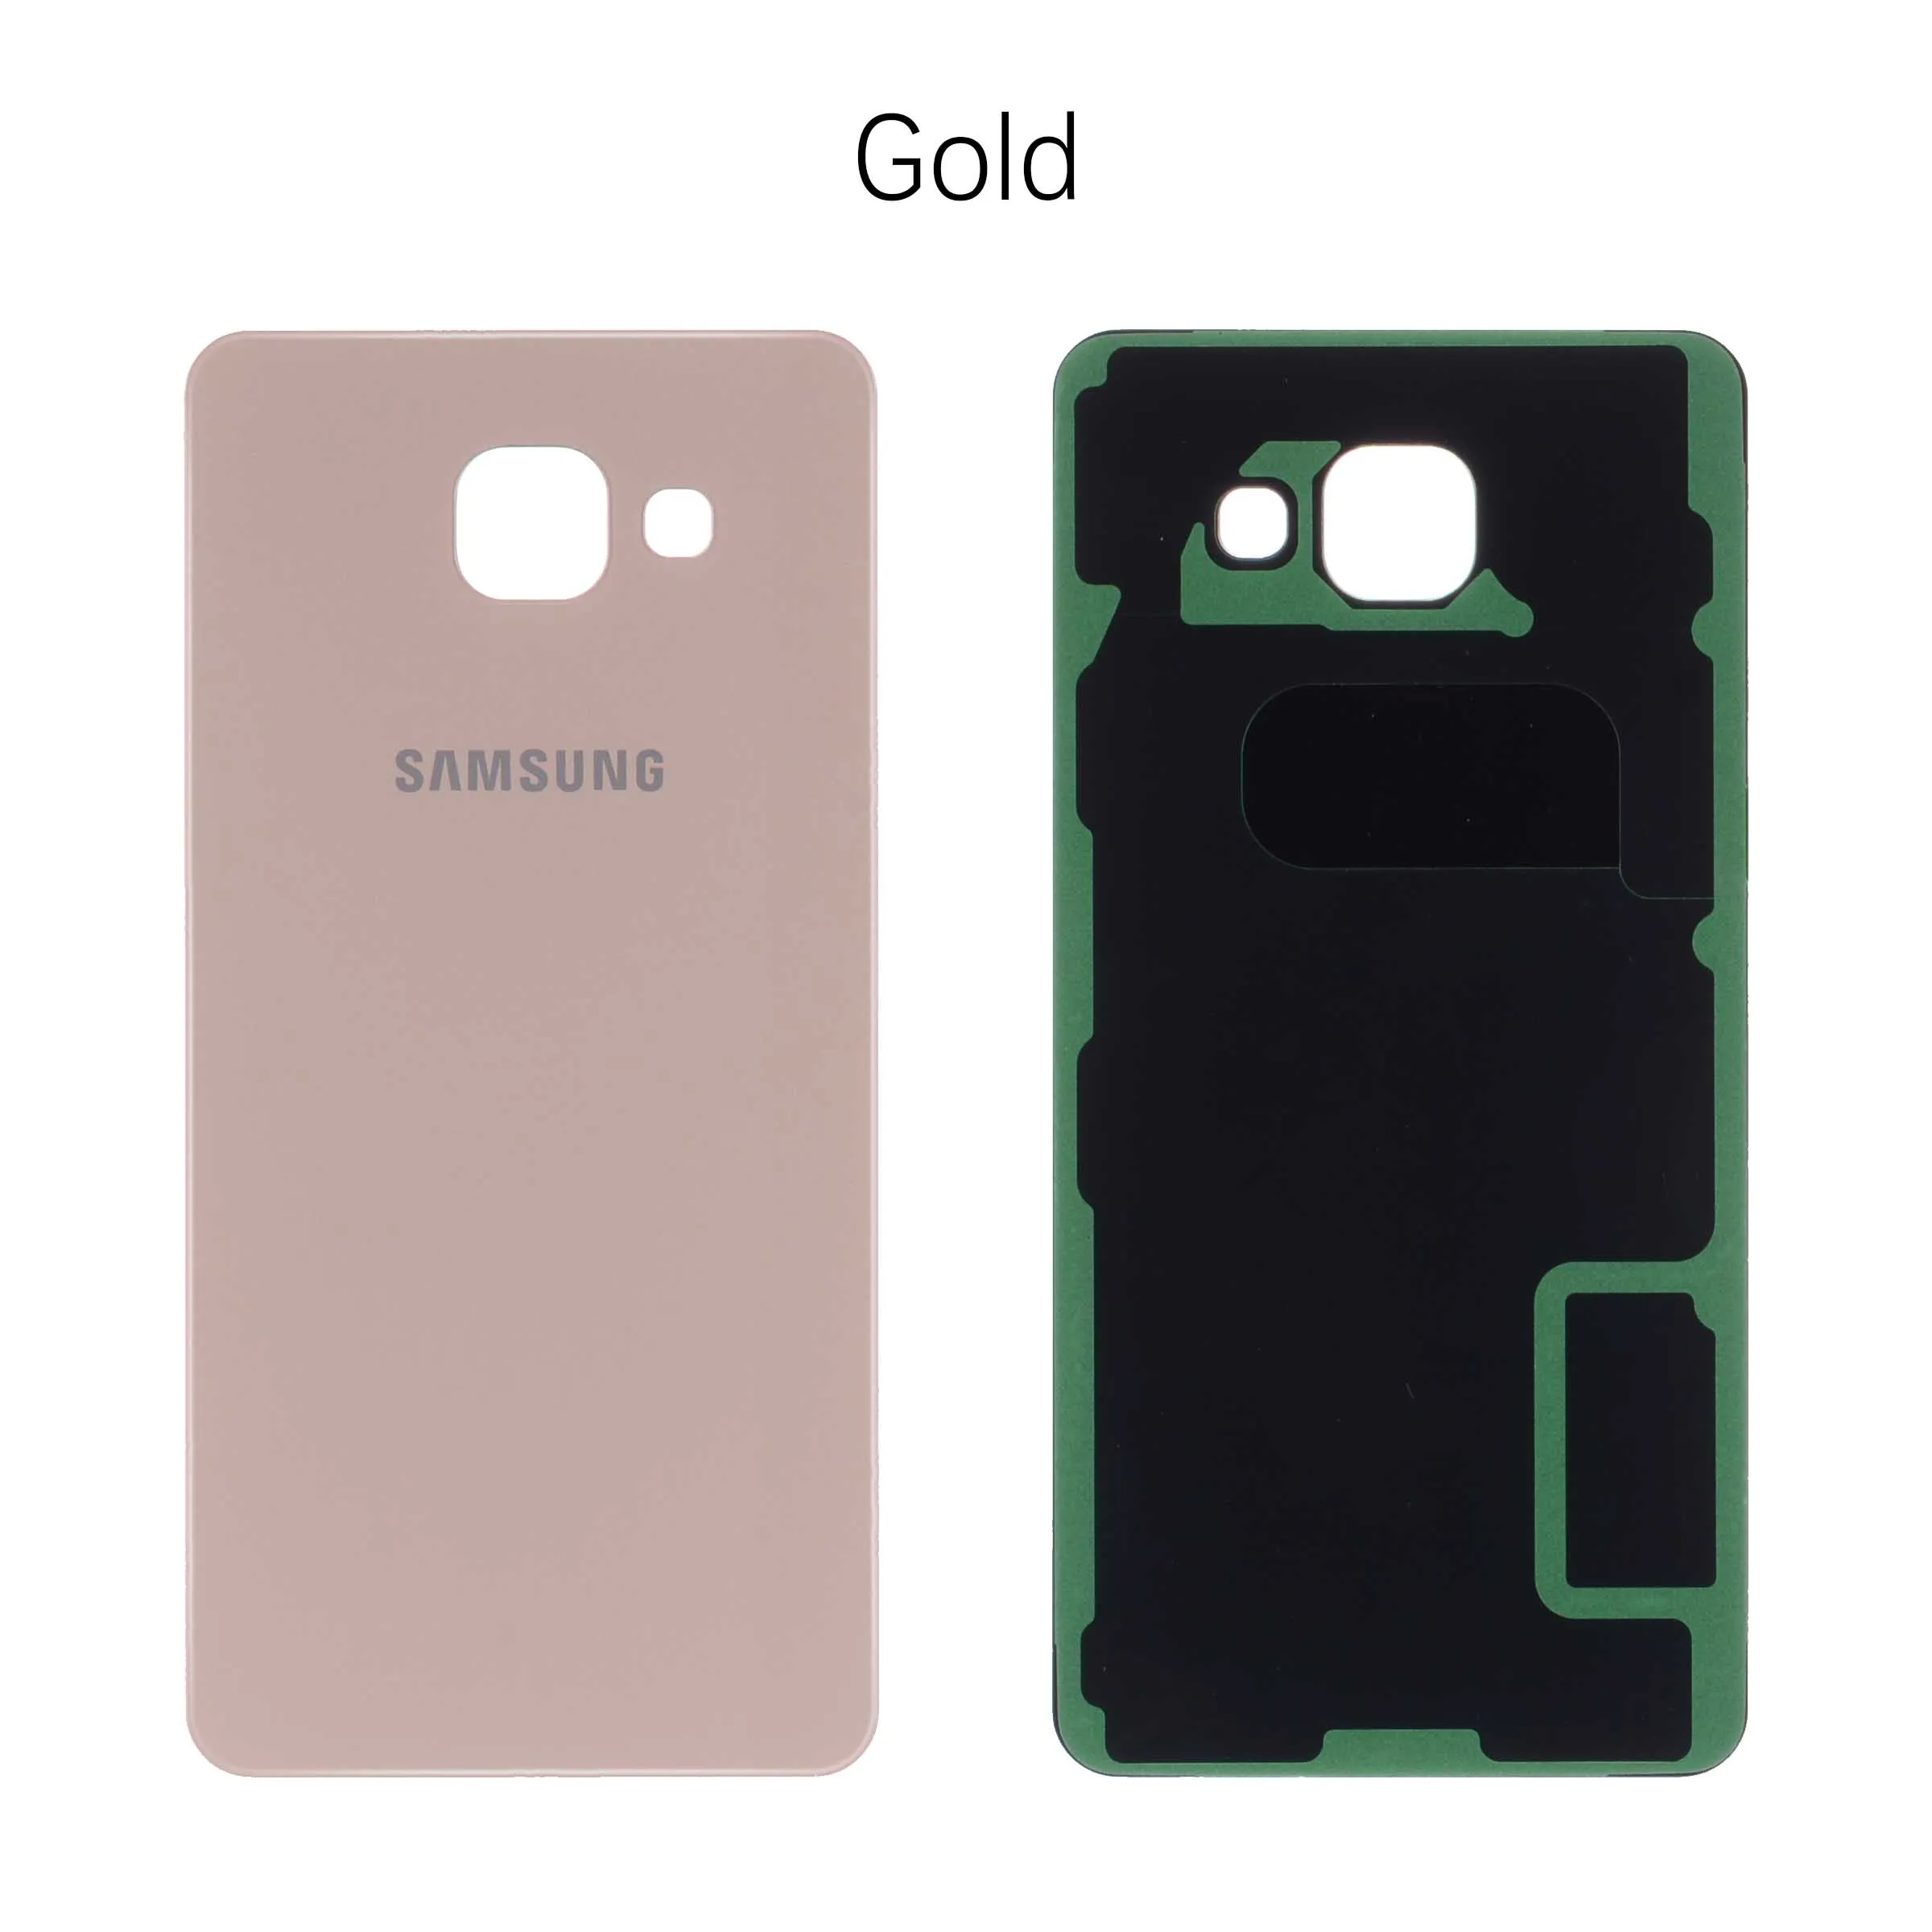 Задняя крышка батареи для Samsung Galaxy A5 A510 A510F задняя крышка корпуса батарейного отсека чехол запасные части - Цвет: Gold